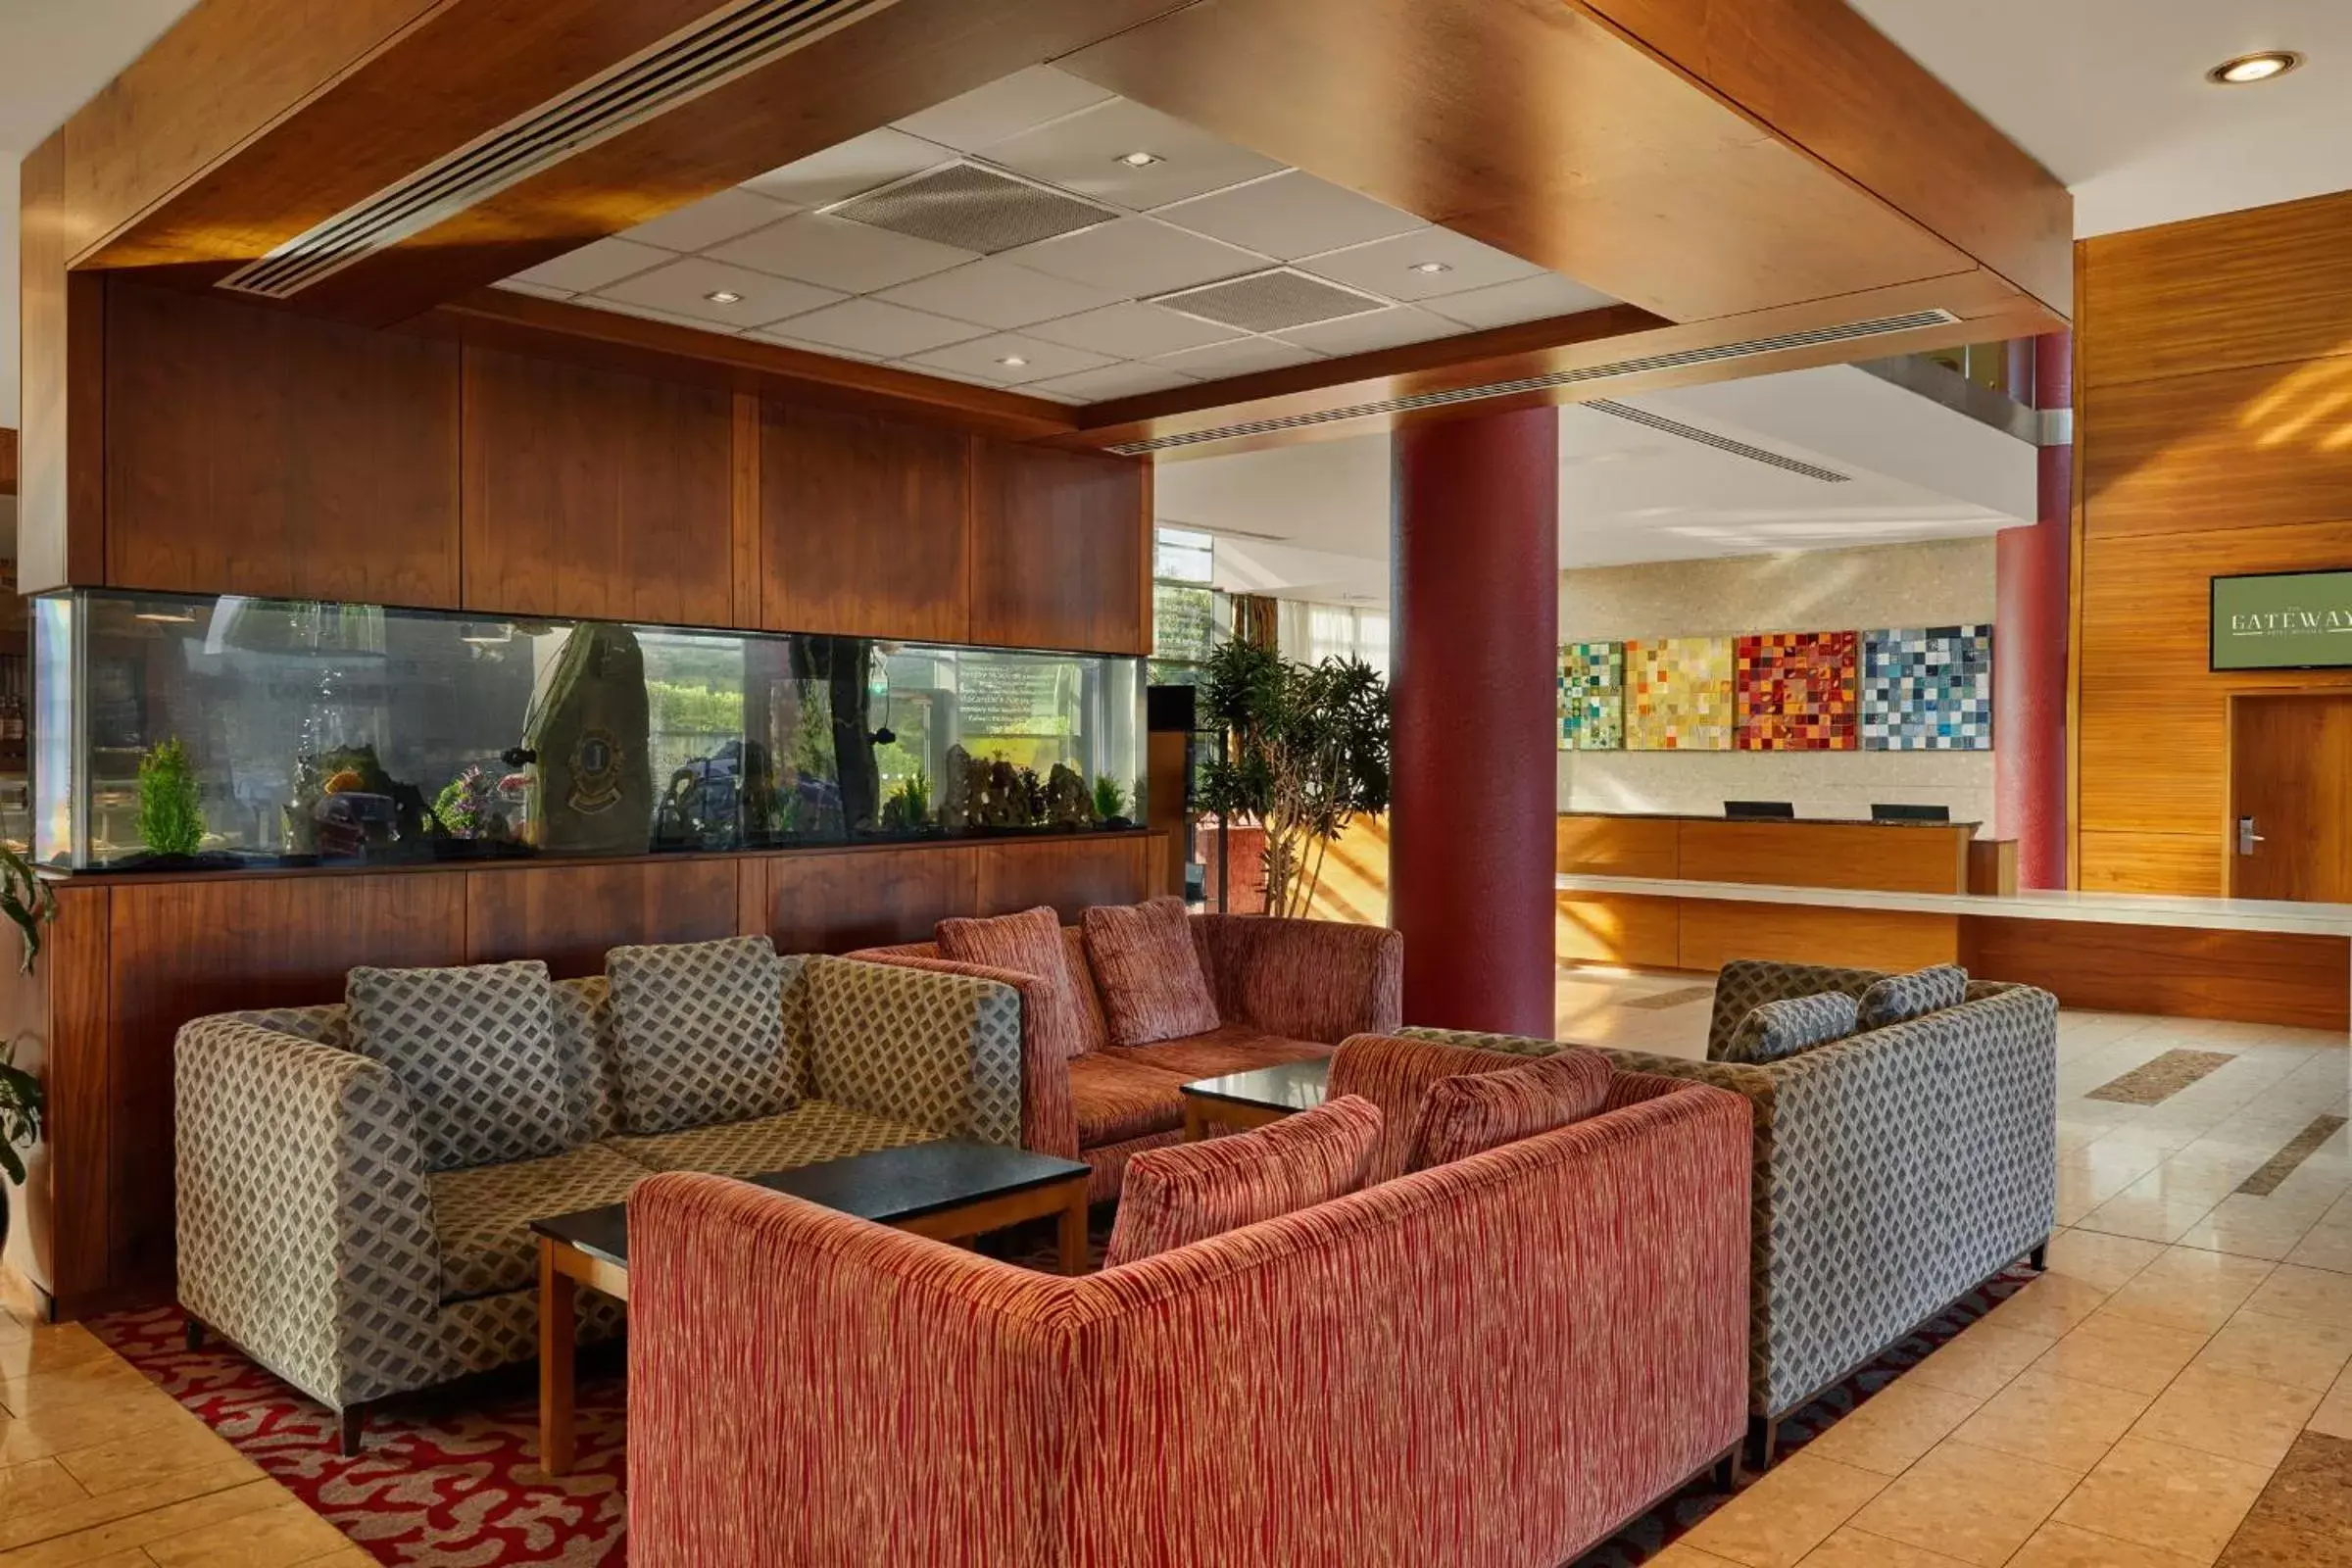 Lobby or reception, Lobby/Reception in The Gateway Hotel